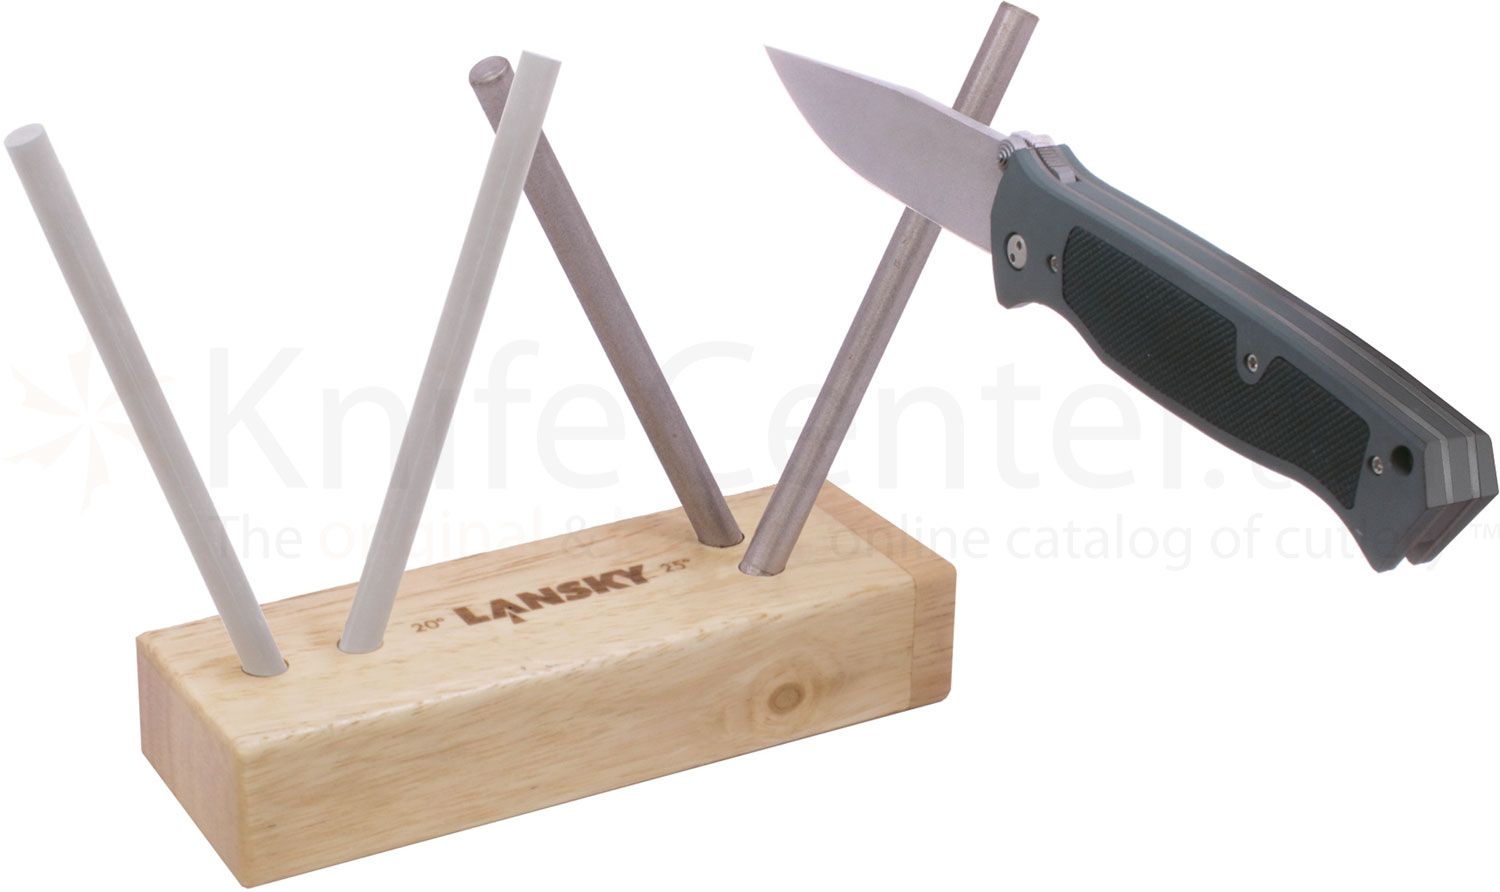 Lansky Diamond and Ceramic Four Rod Turnbox Knife Sharpener